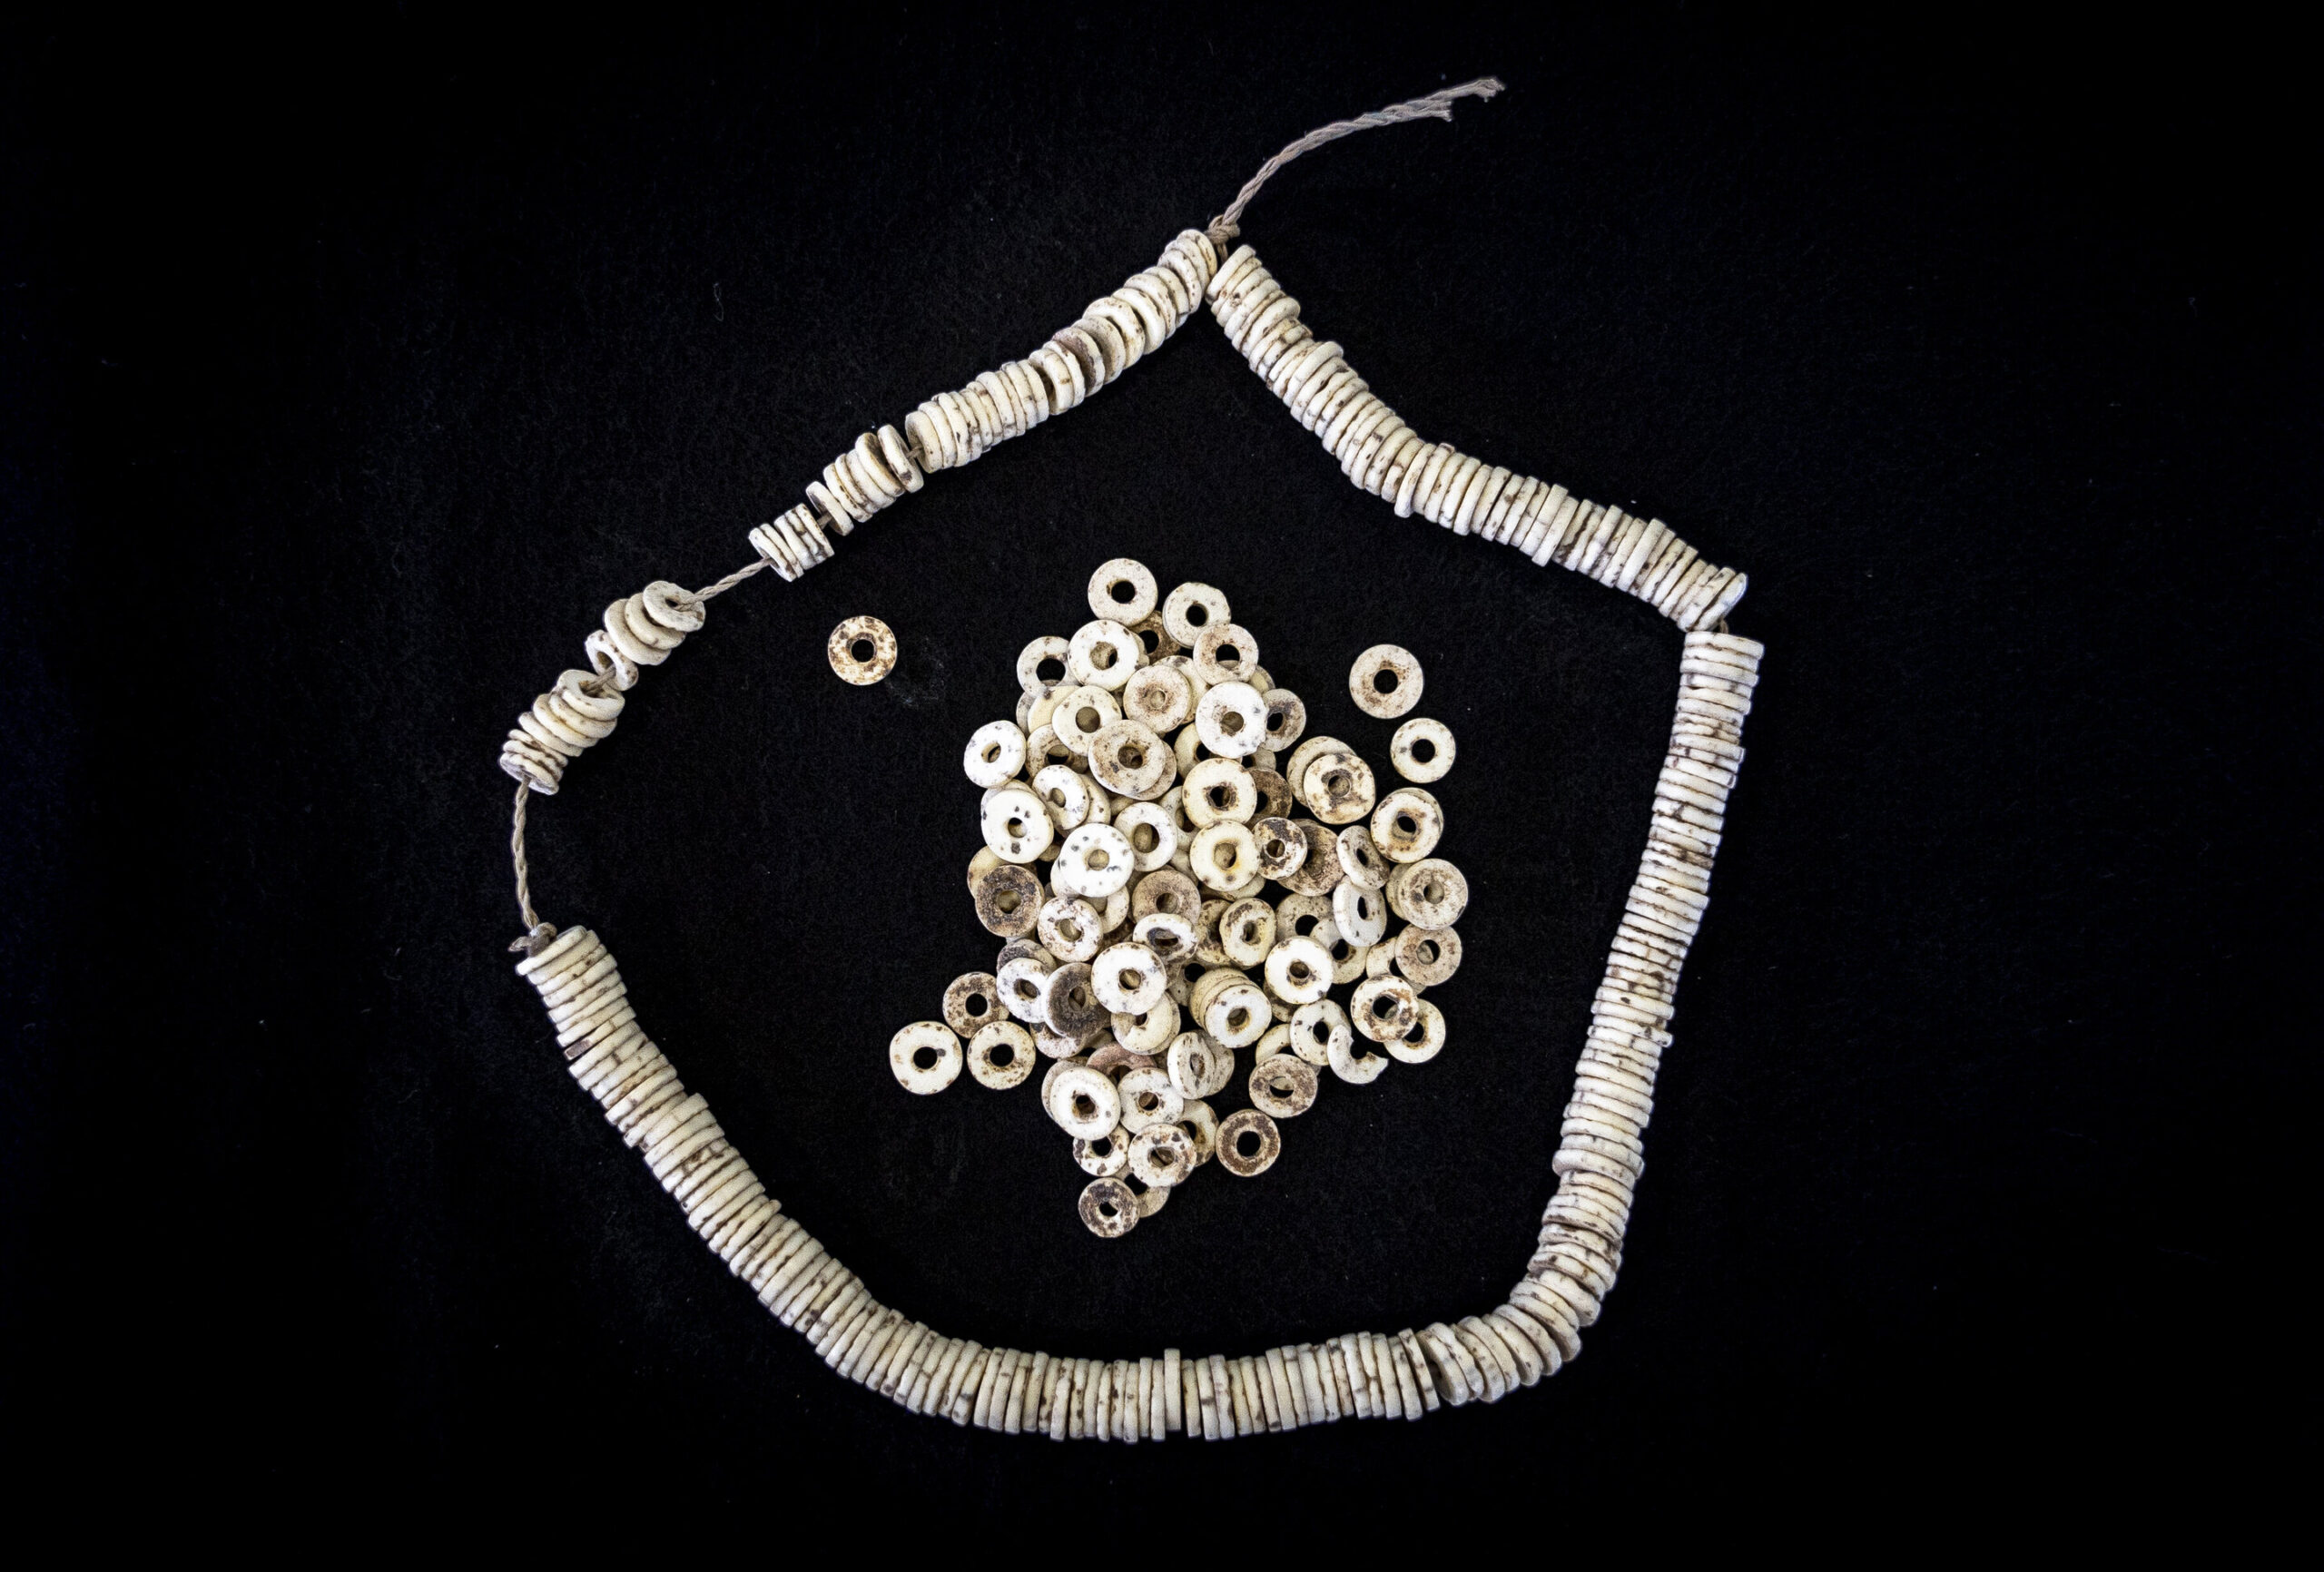 Des scientifiques découvrent le plus ancien réseau social du monde utilisant des perles